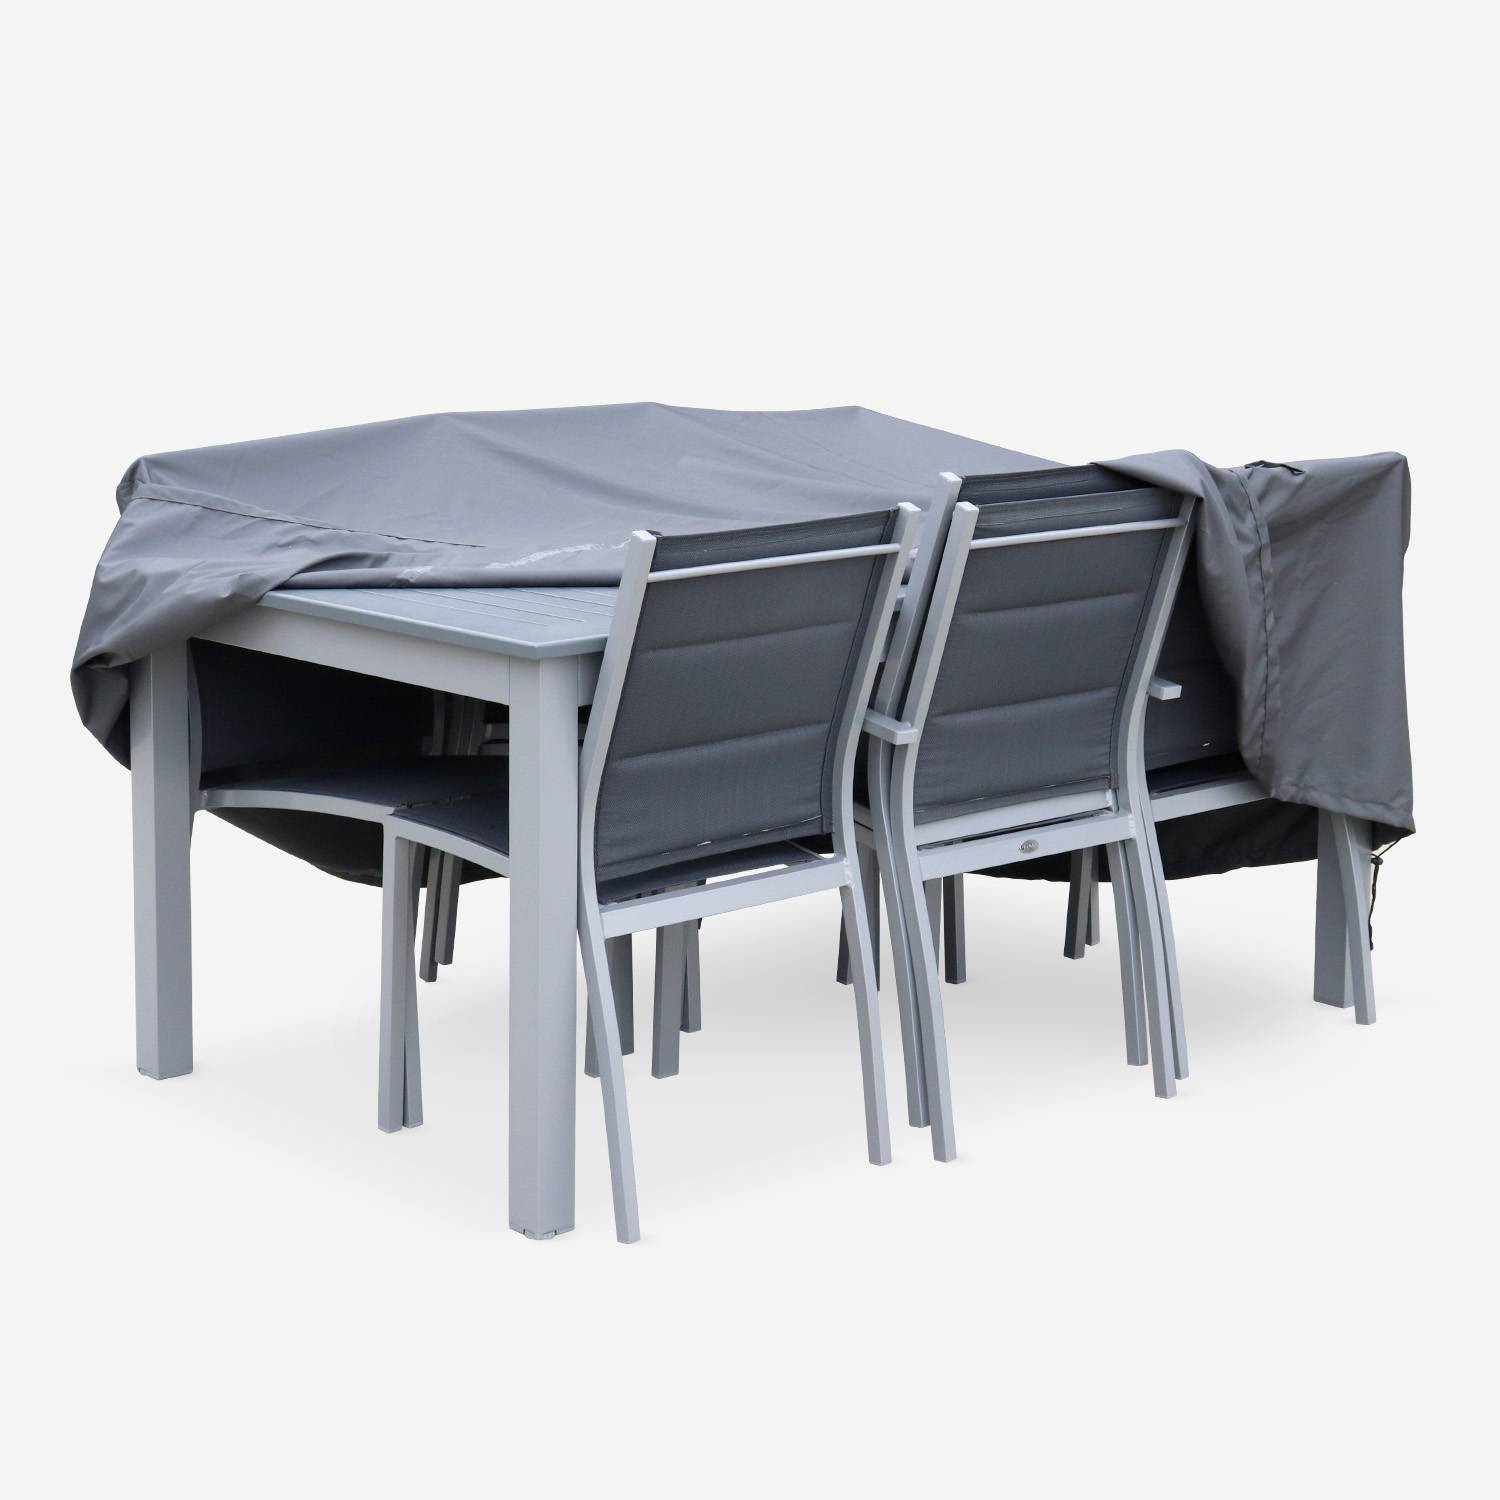 Fodera di protezione 175x124cm grigio scuro  - Copertura rettangolare in poliestere con rivestimento PA per tavoli da giardino, modello: Chicago Photo3